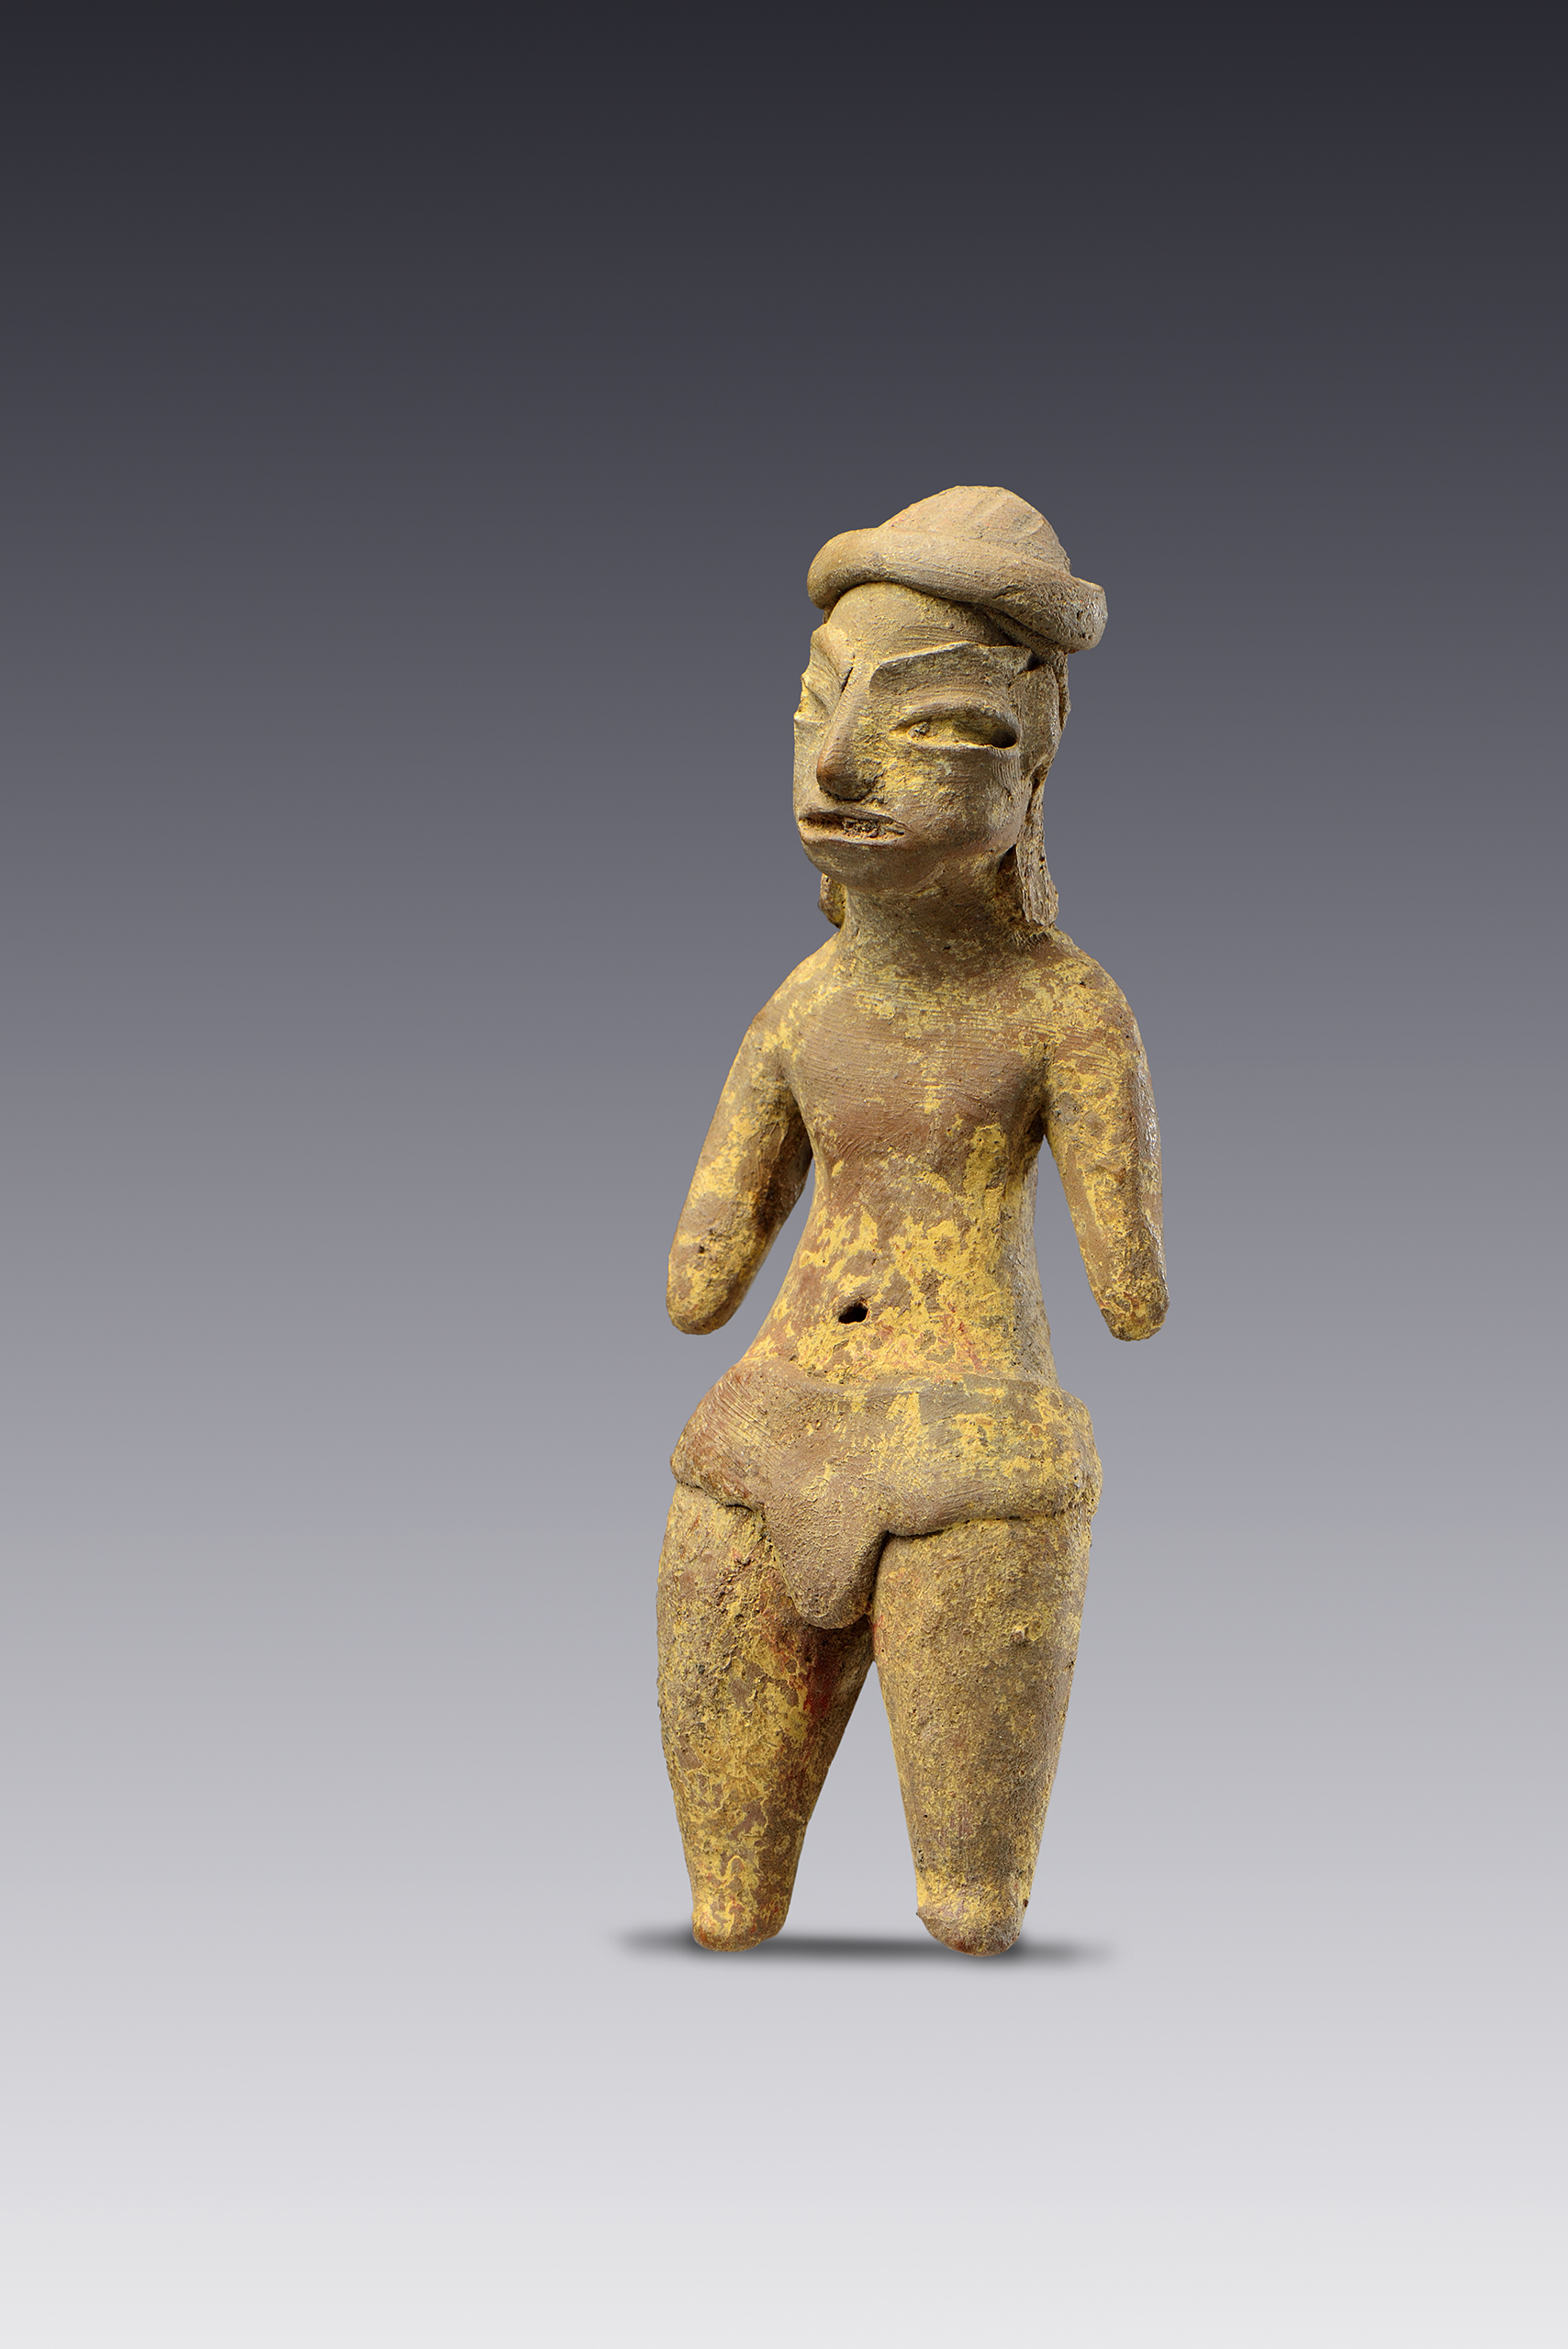 Hombres antropomorfos | El México antiguo. Salas de Arte Prehispánico | Museo Amparo, Puebla